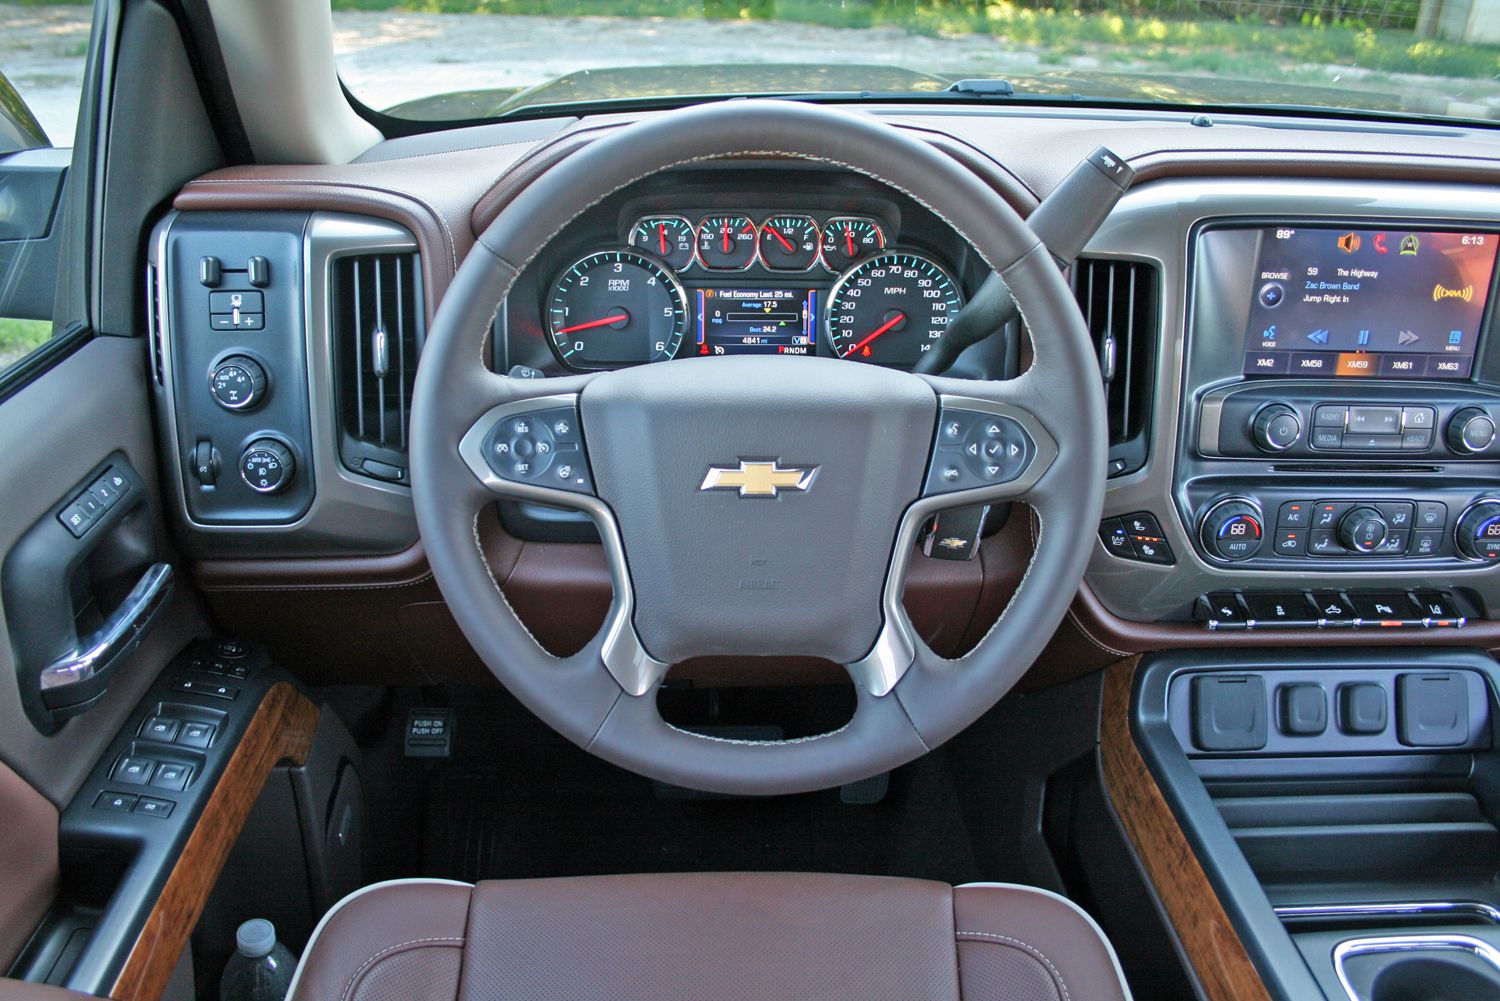 2014 Chevrolet Silverado High Country - Driven